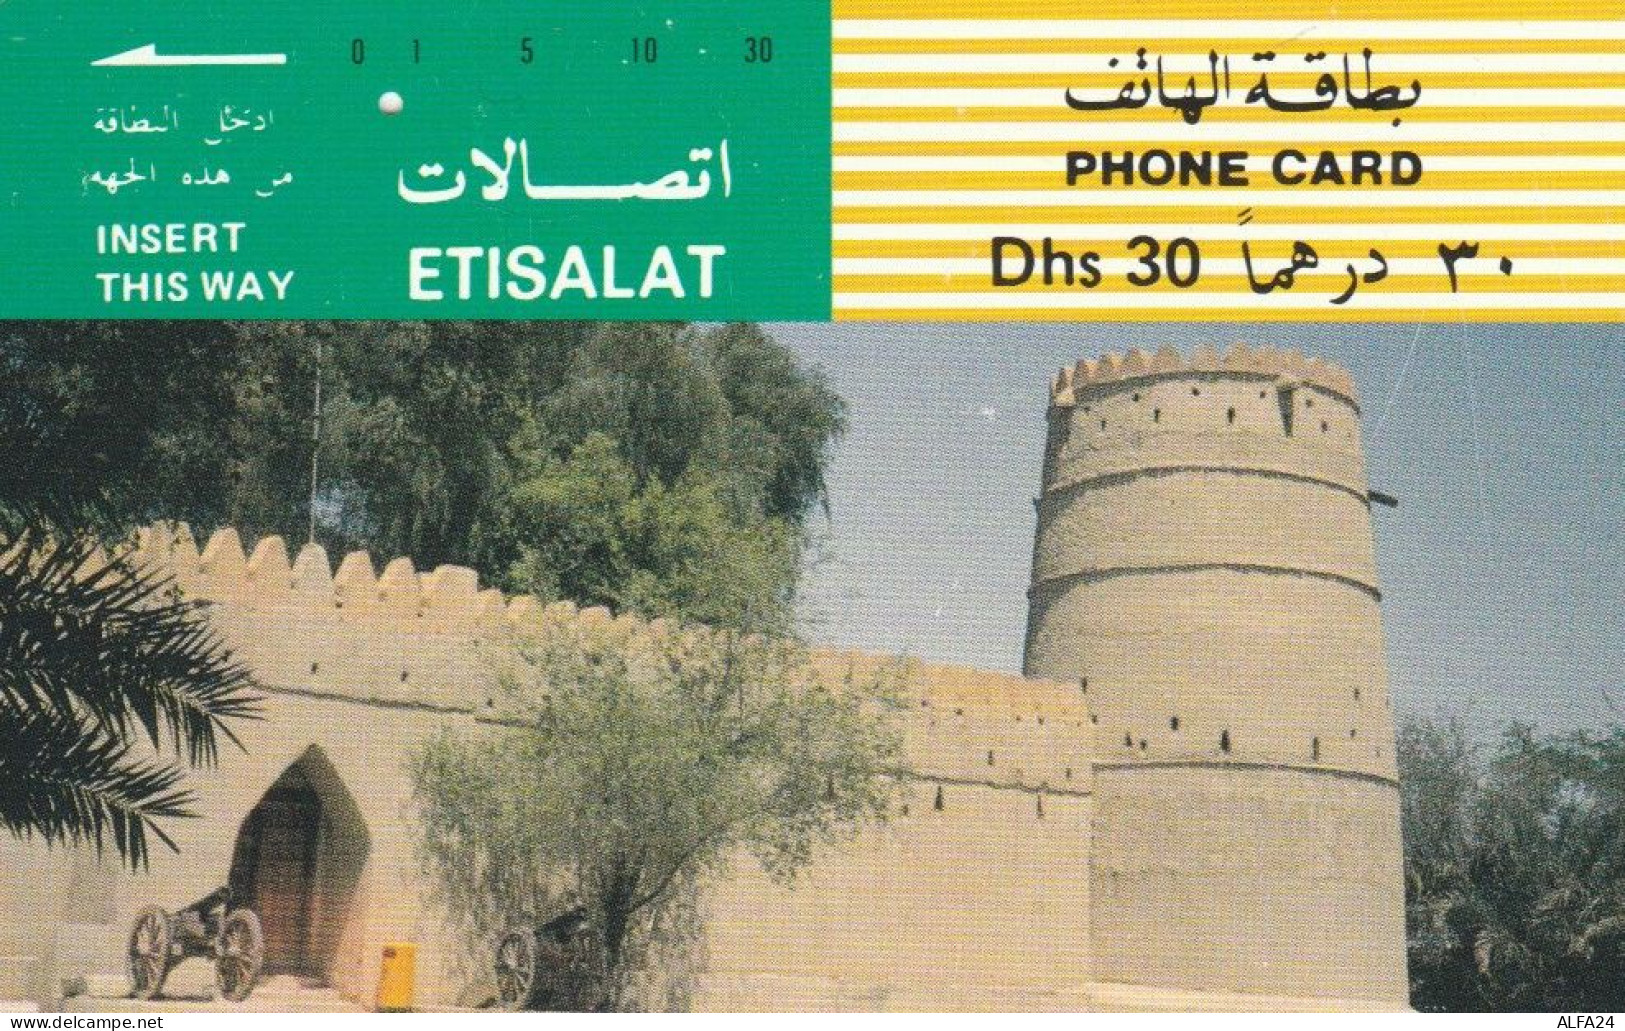 PHONE CARD EMIRATI ARABI (E53.15.8 - Ver. Arab. Emirate